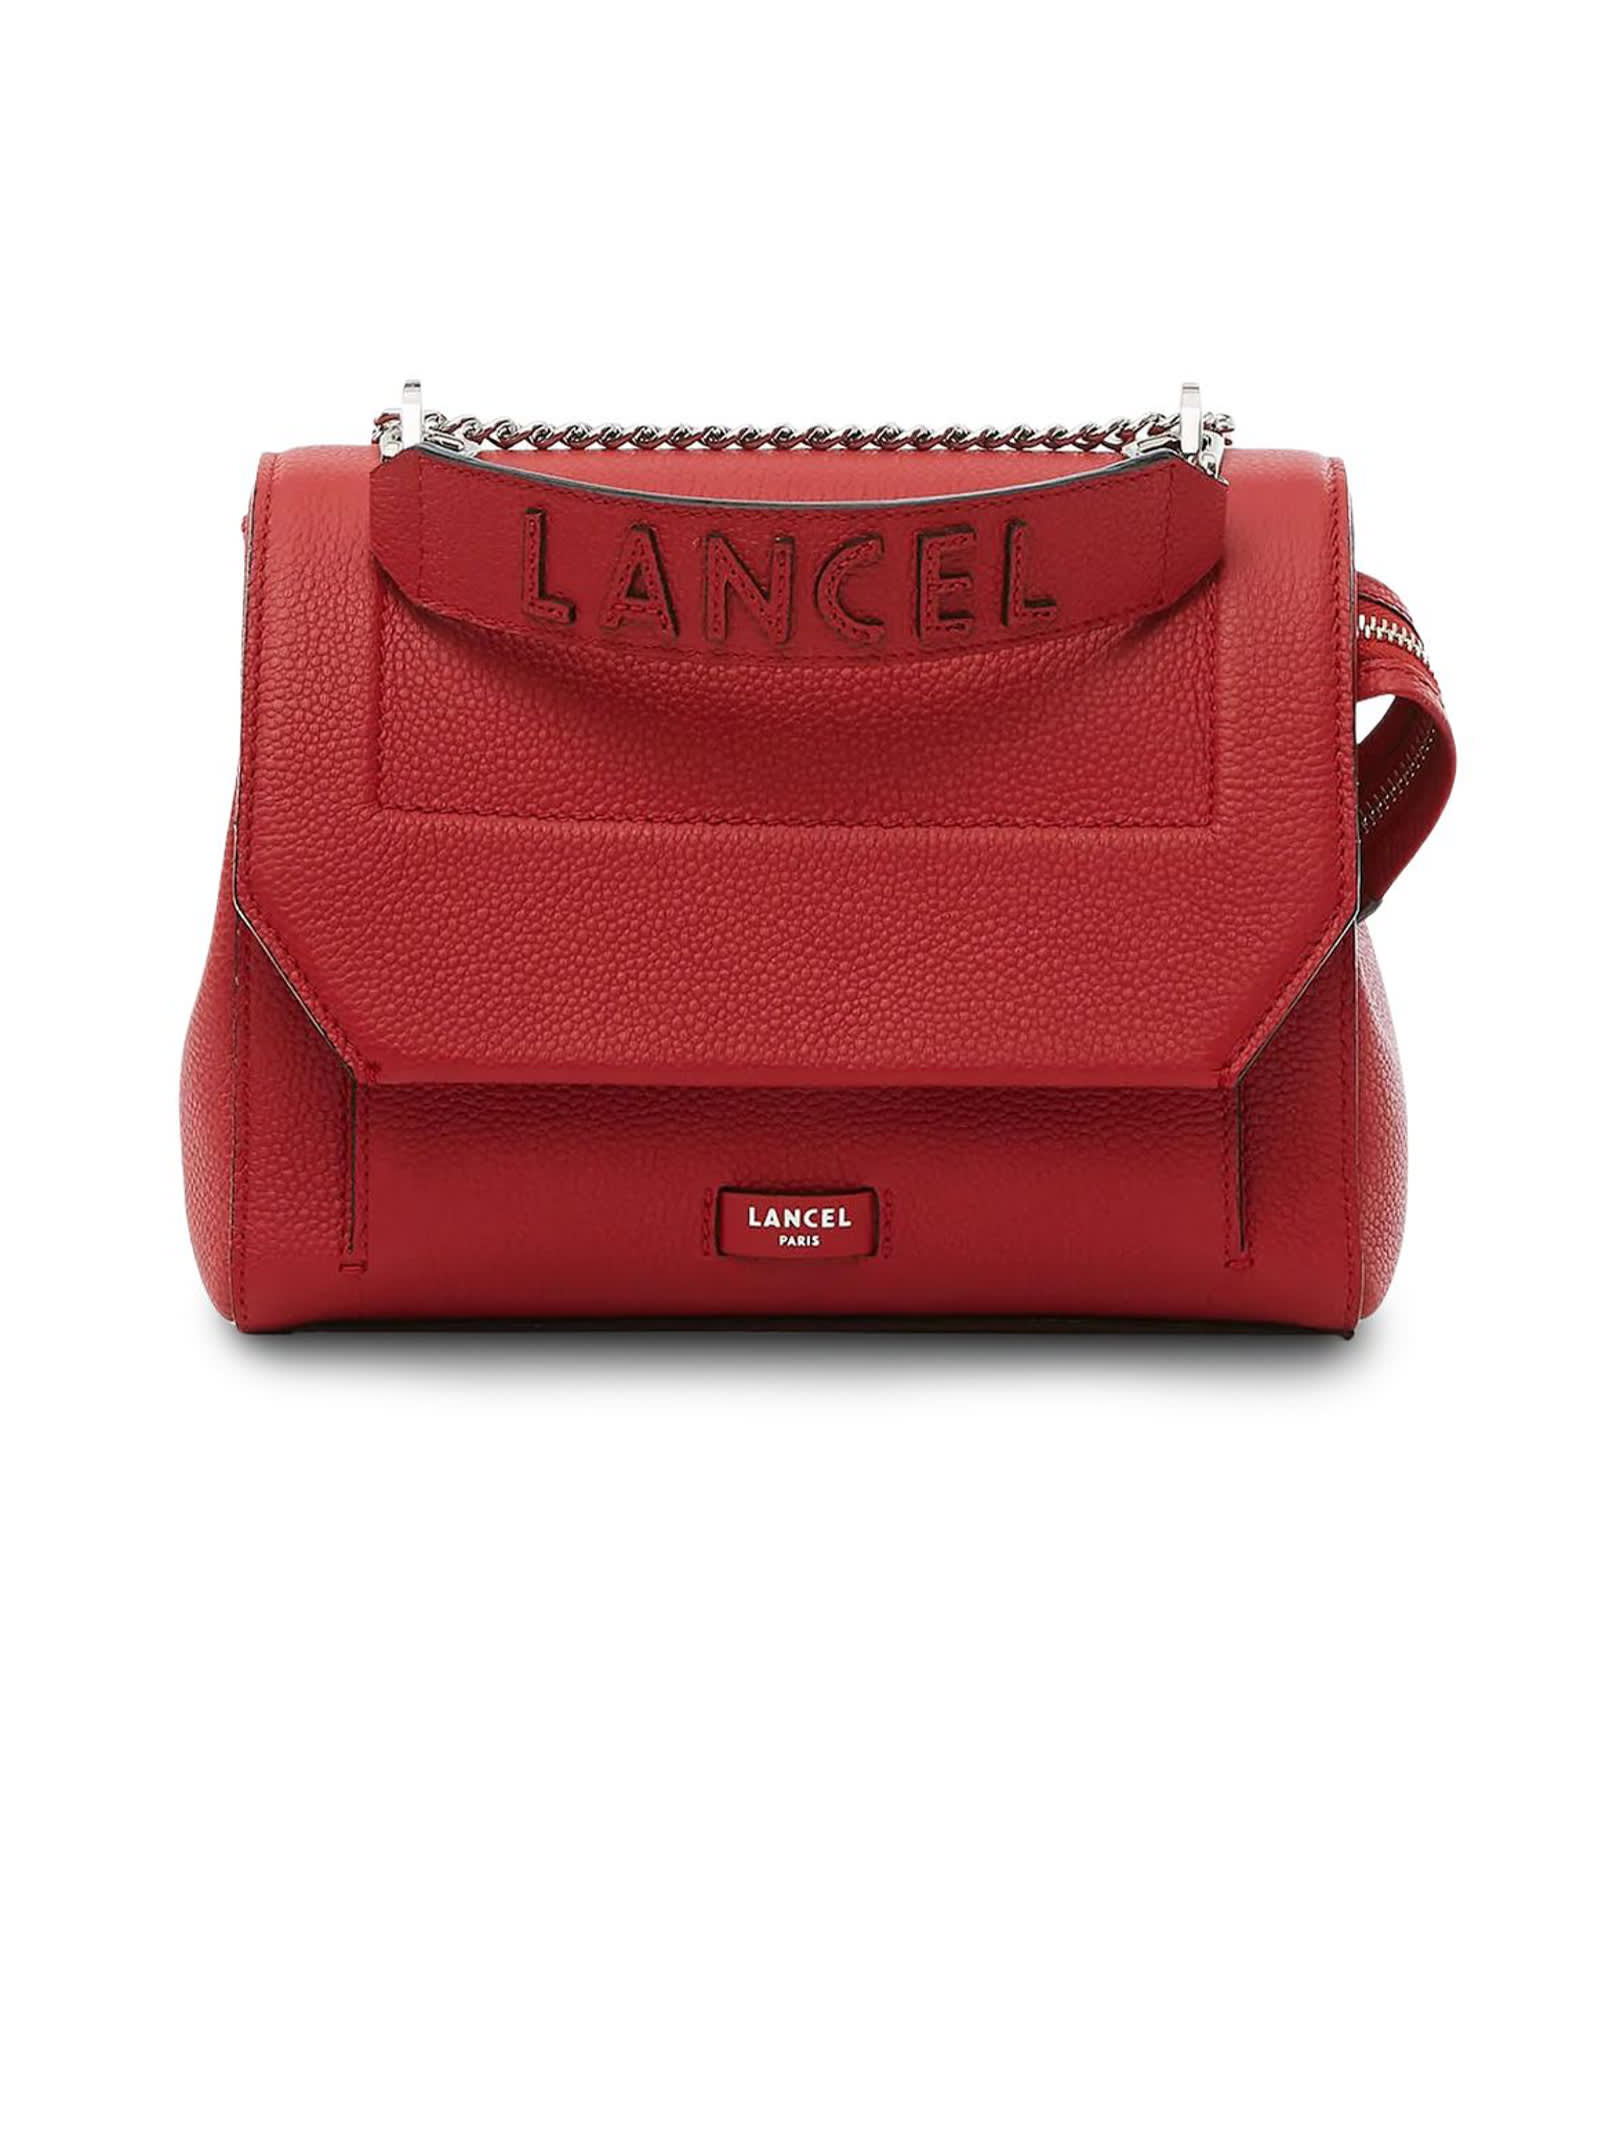 Lancel Red Leather Shoulder Bag